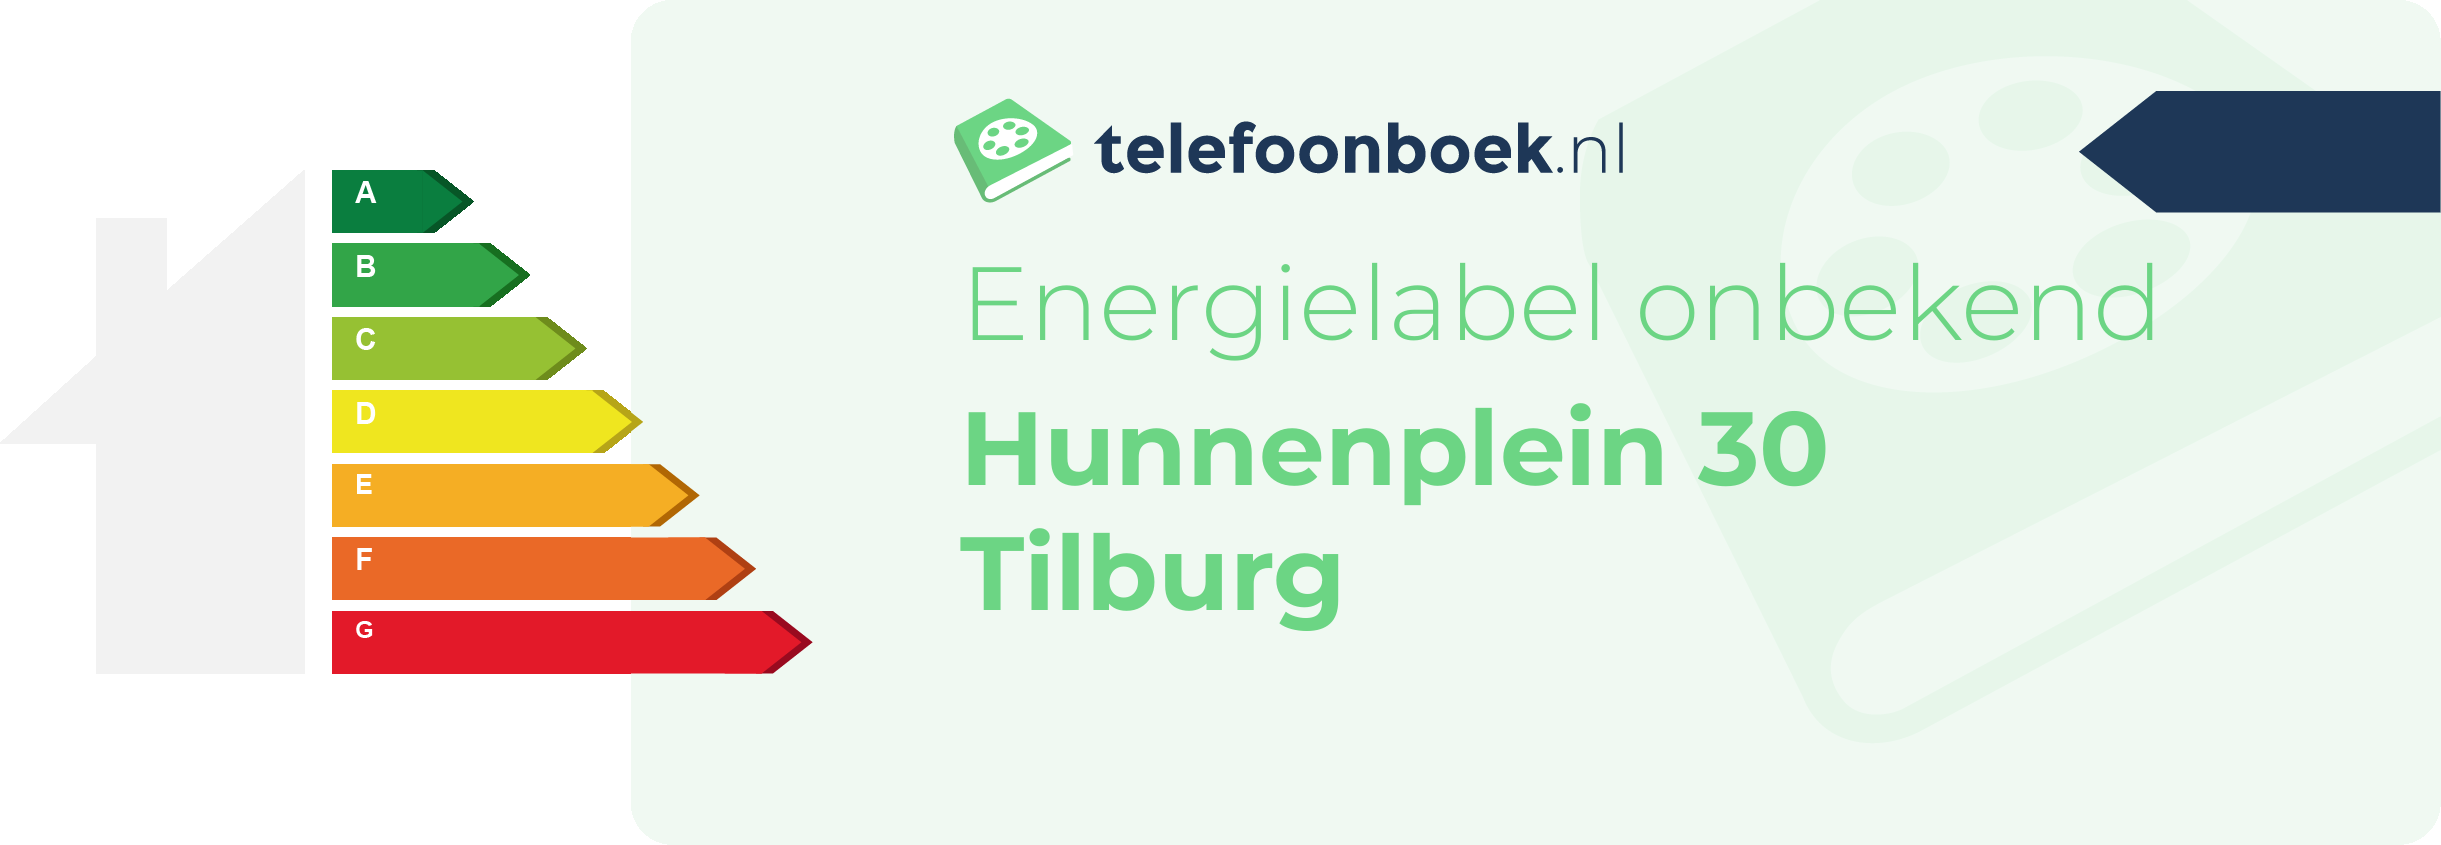 Energielabel Hunnenplein 30 Tilburg